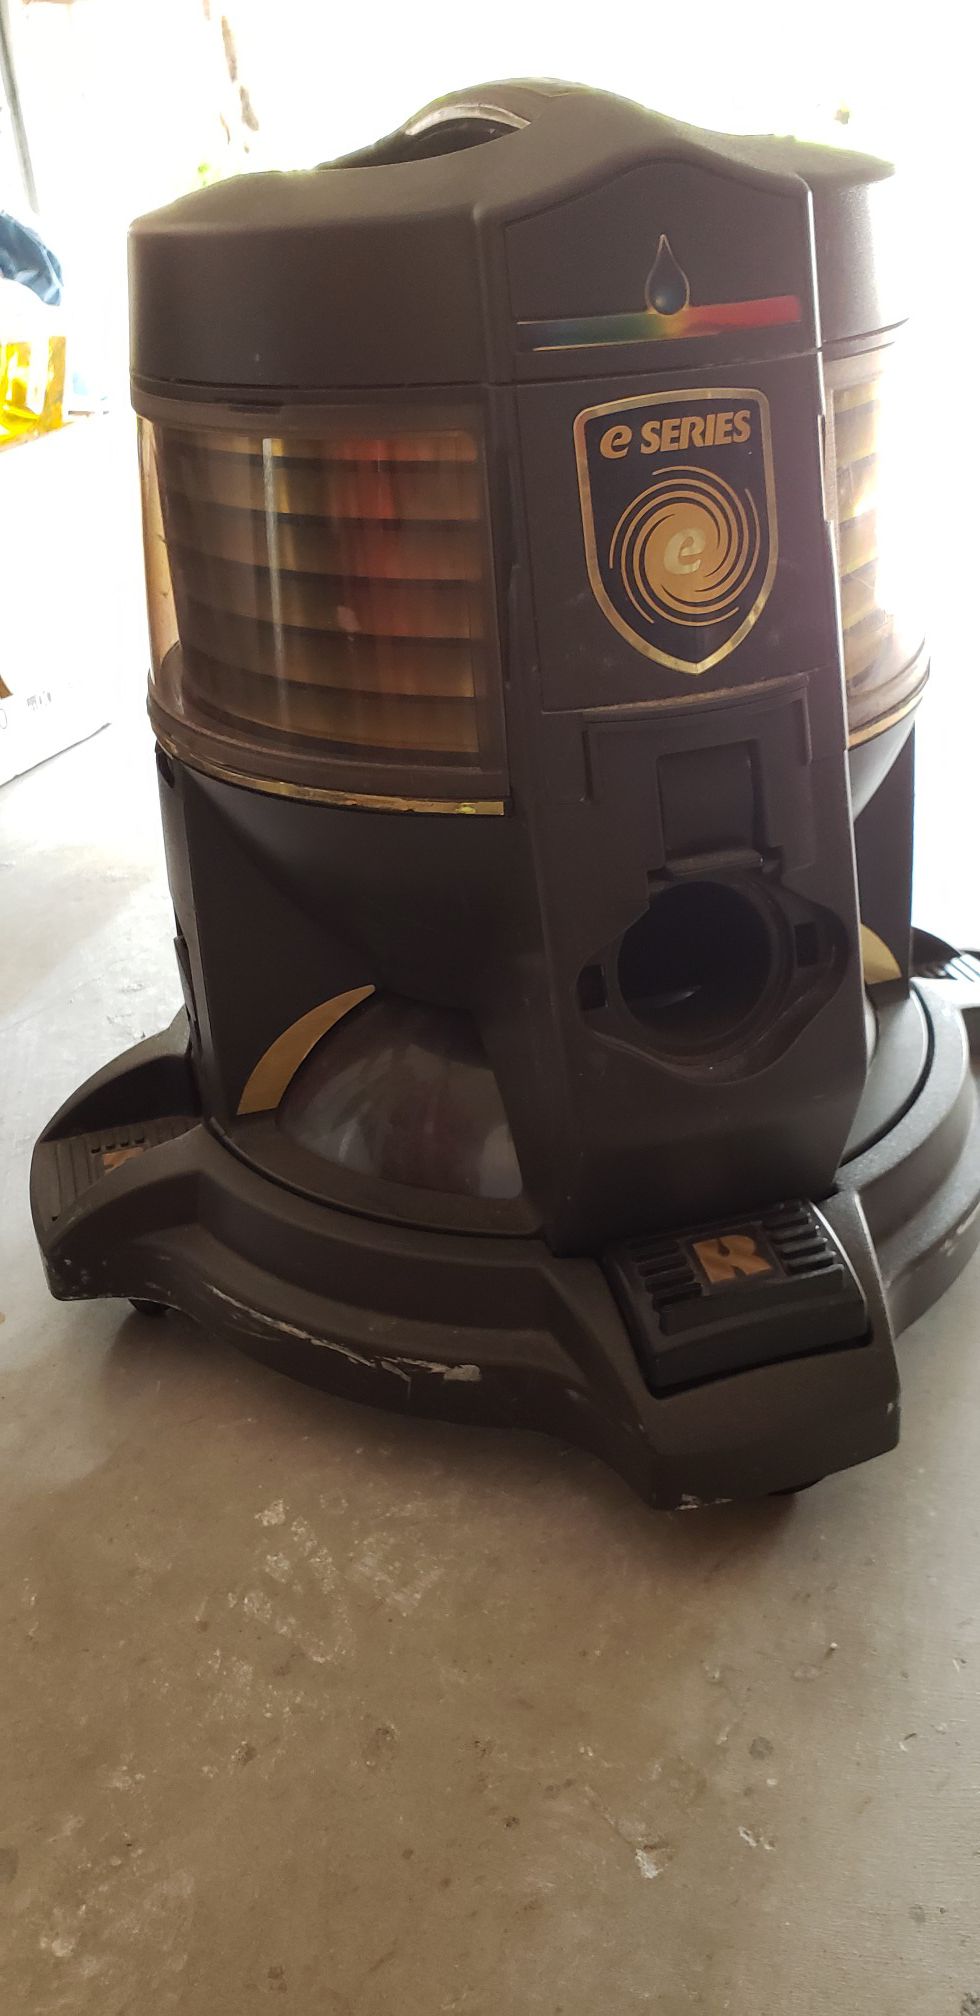 Rainbow e-series vacuum cleaner